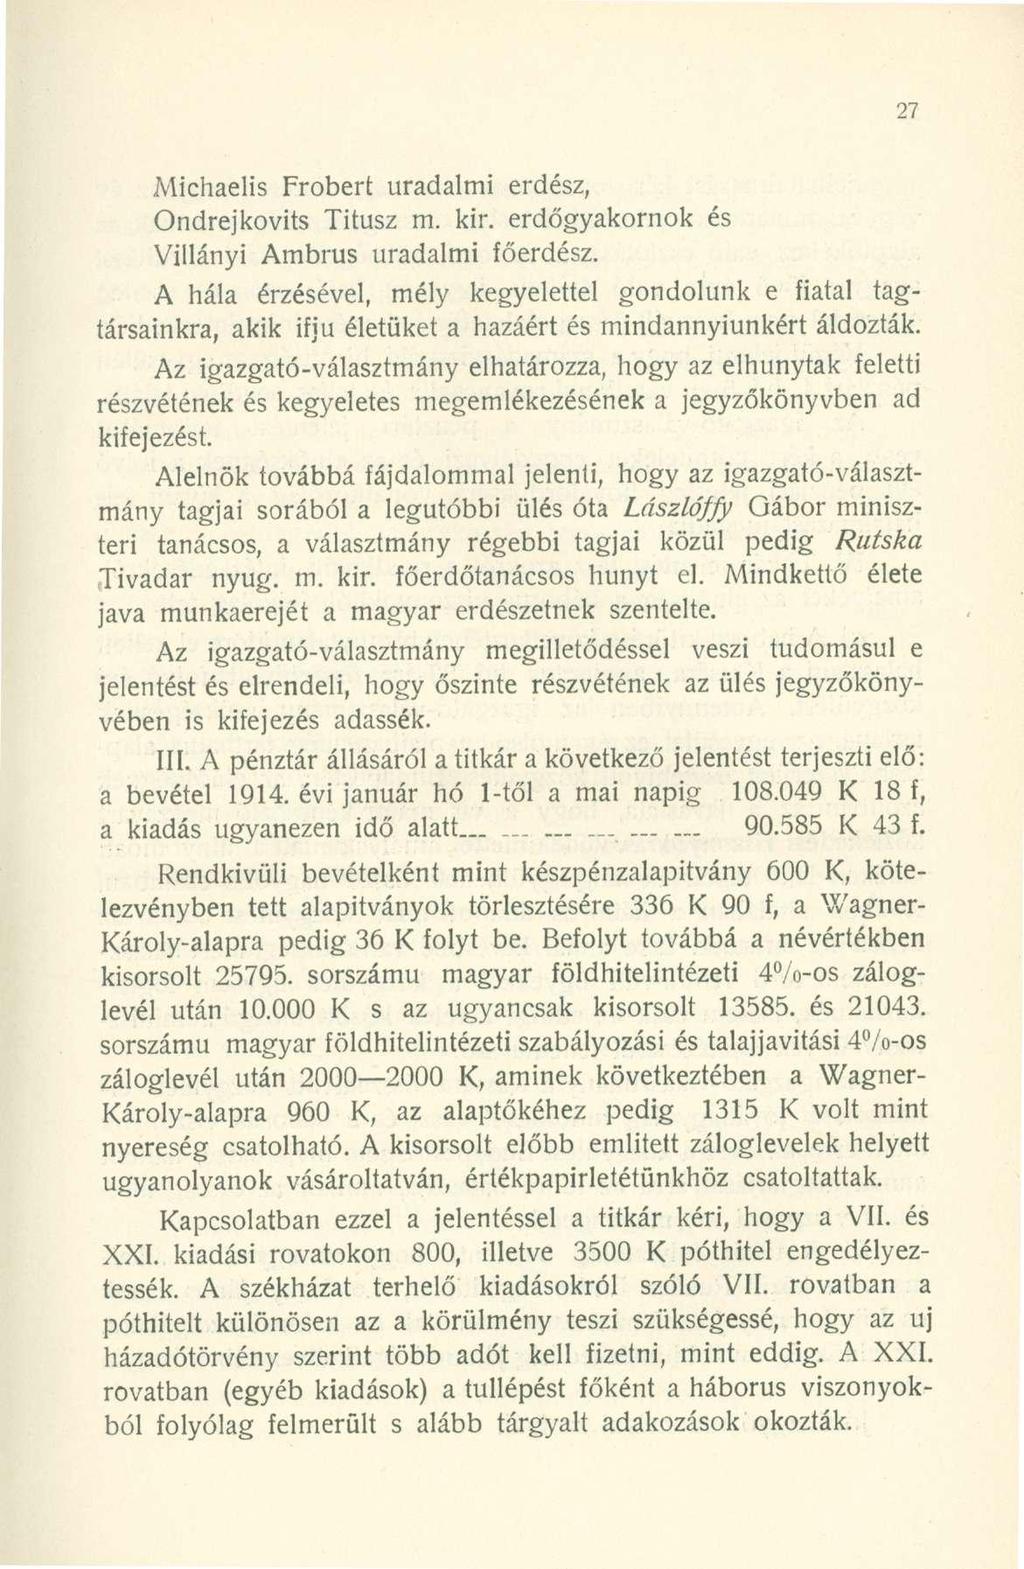 Michaelis Frobert uradalmi erdész, Ondrejkovits Titusz m. kir. erdőgyakornok és Villányi Ambrus uradalmi főerdész.